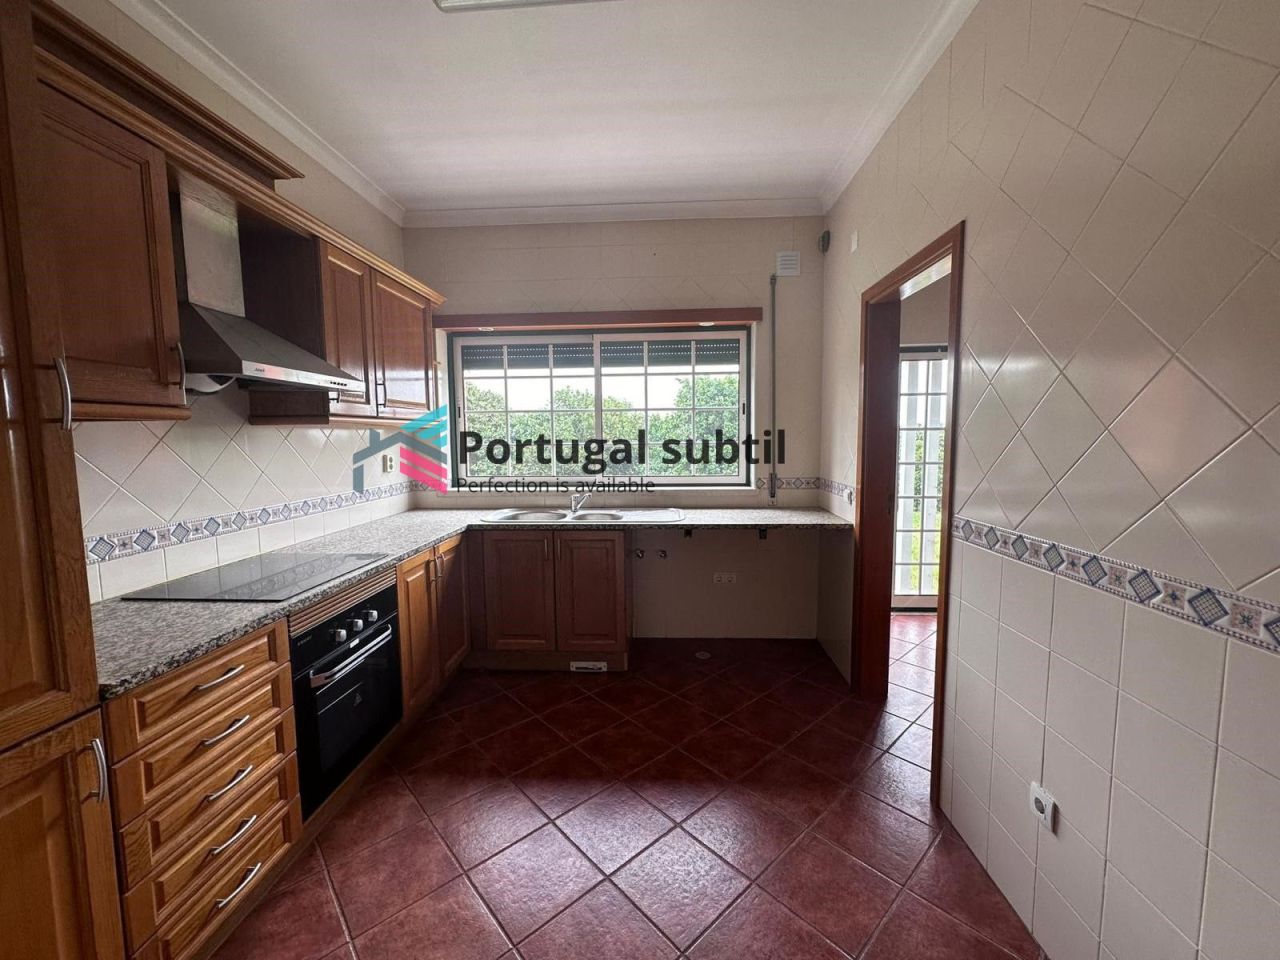 Flat in Santarem, Portugal, 83 sq.m - picture 1